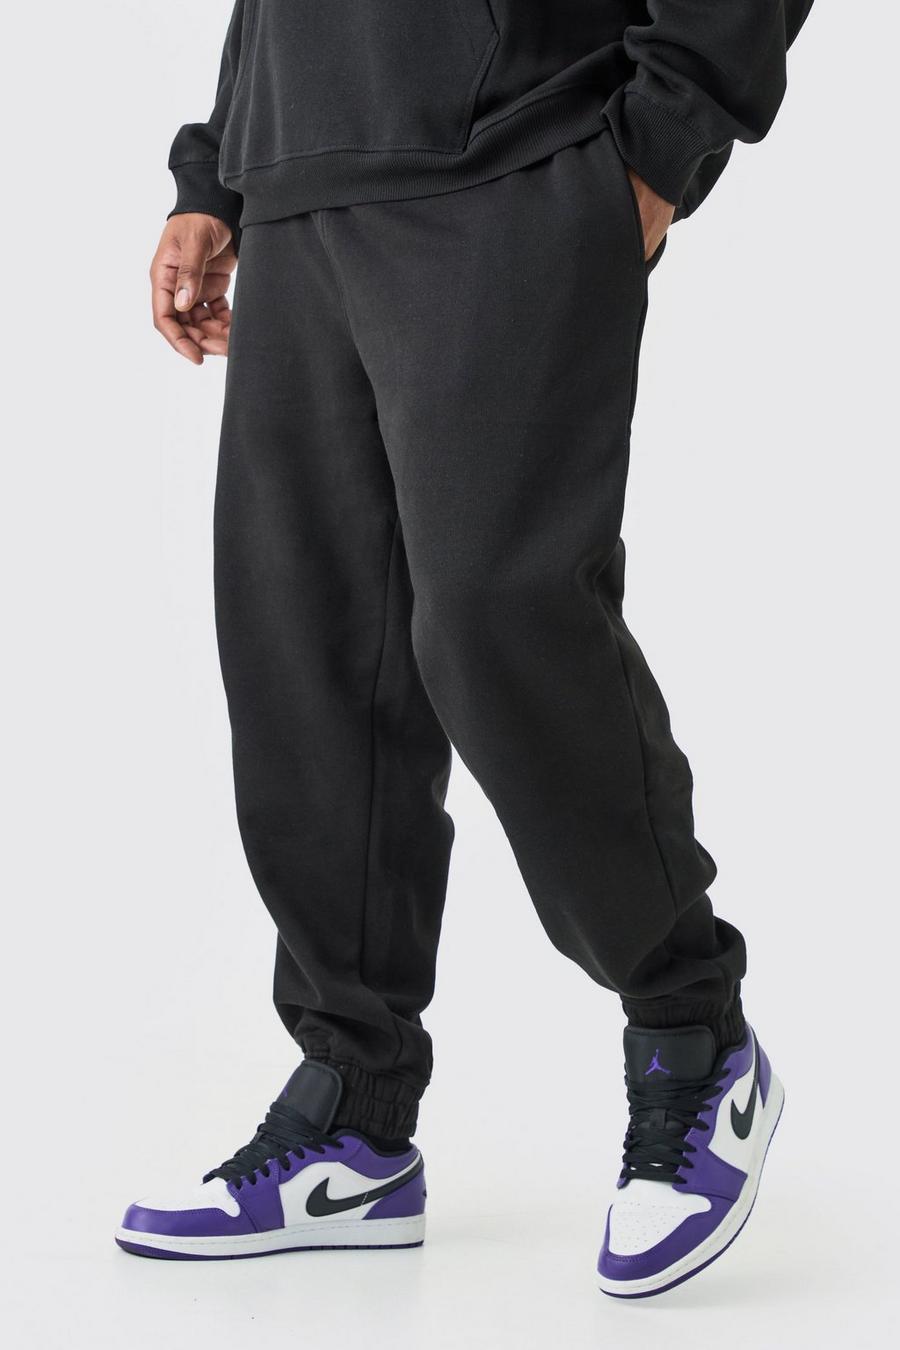 Acheter Pantalon de jogging grande taille pour homme Noir ? Bon et